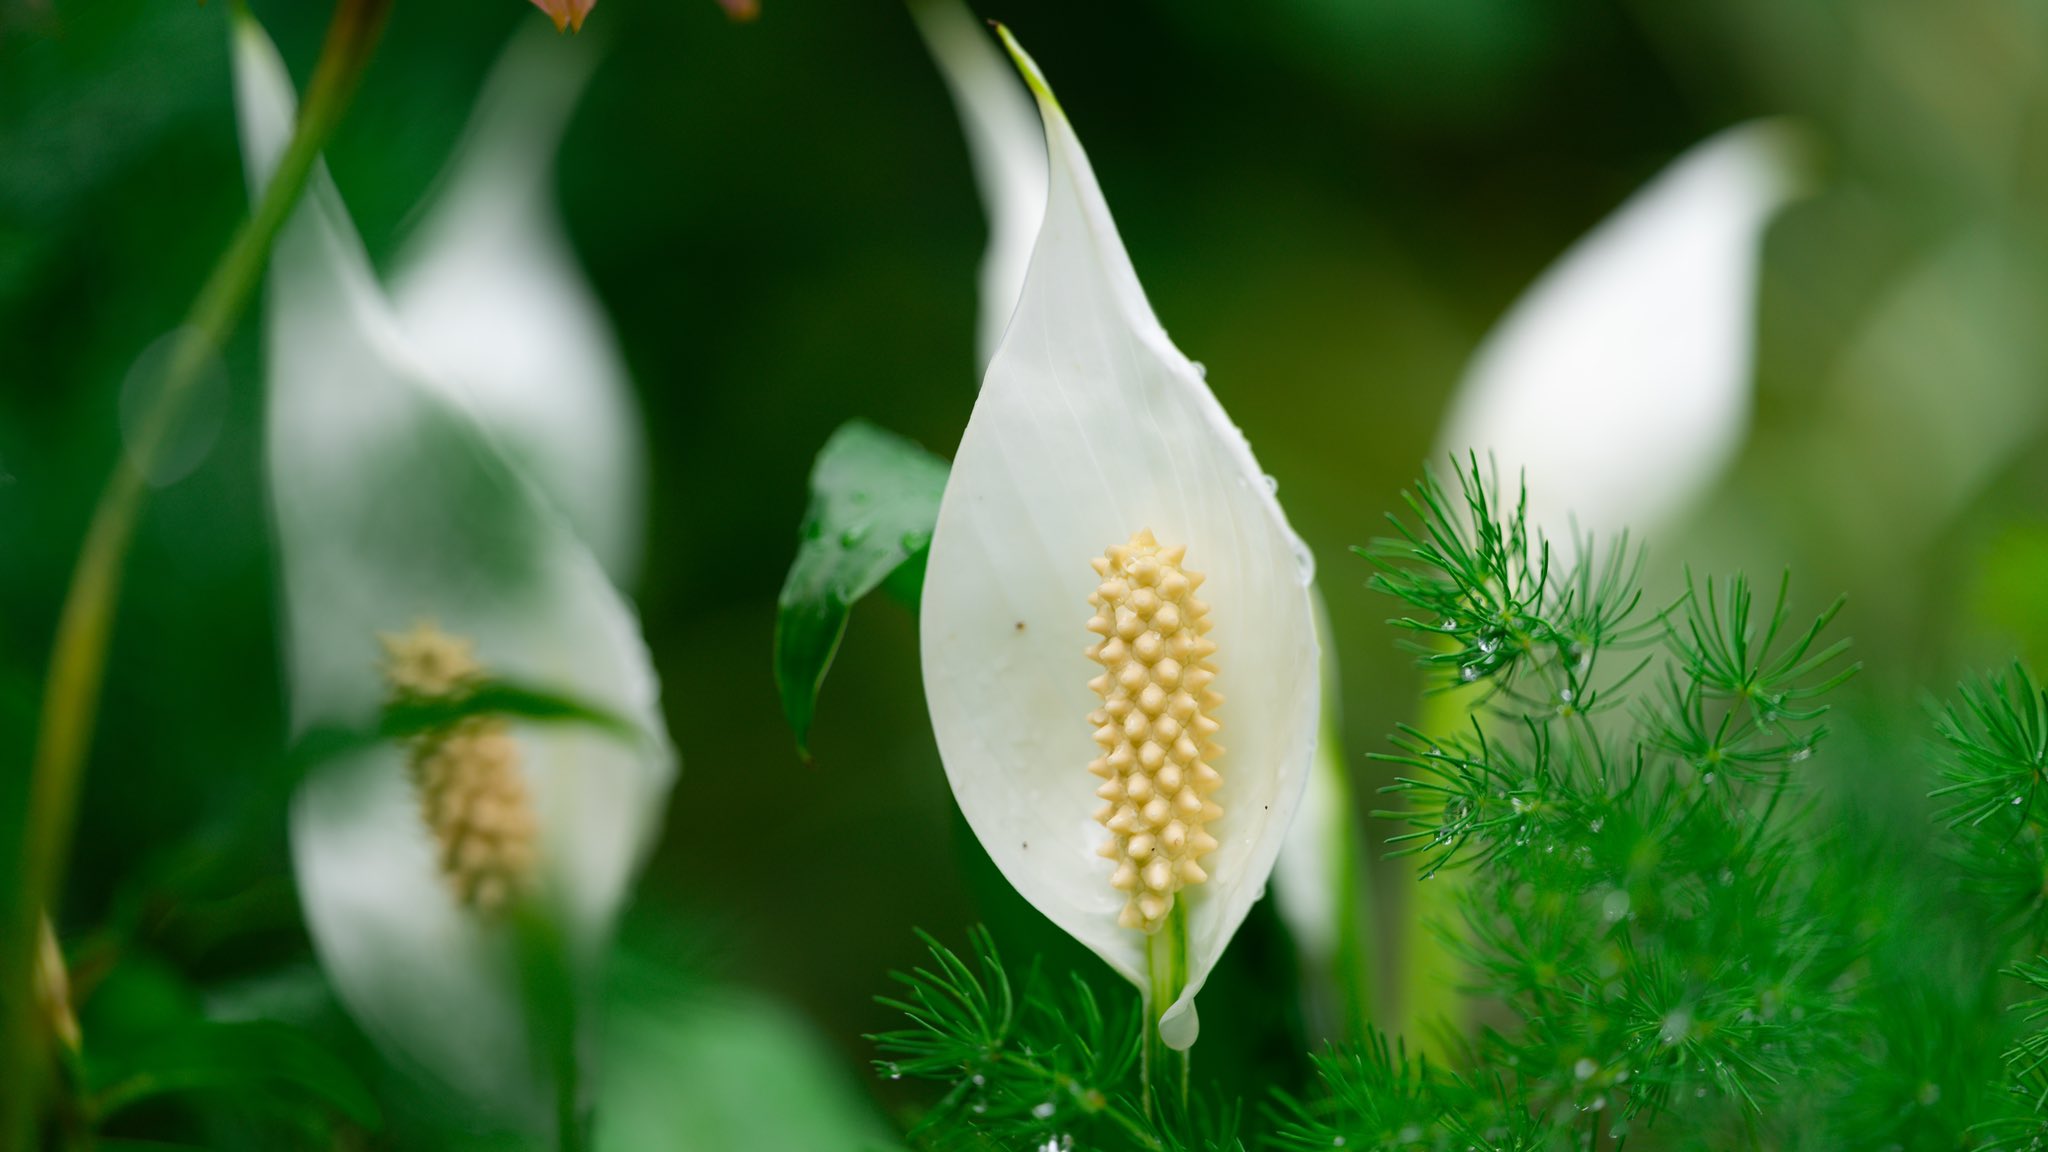 Takao ササウチワ 笹うちわ ササウチワが咲いていました 南米原産 里芋の仲間です 白い花弁のような部分は苞 葉っぱ で 真ん中のとうもろこしみたいな部分が花です 花言葉は 爽快 T Co Hikxv8f2u1 Twitter